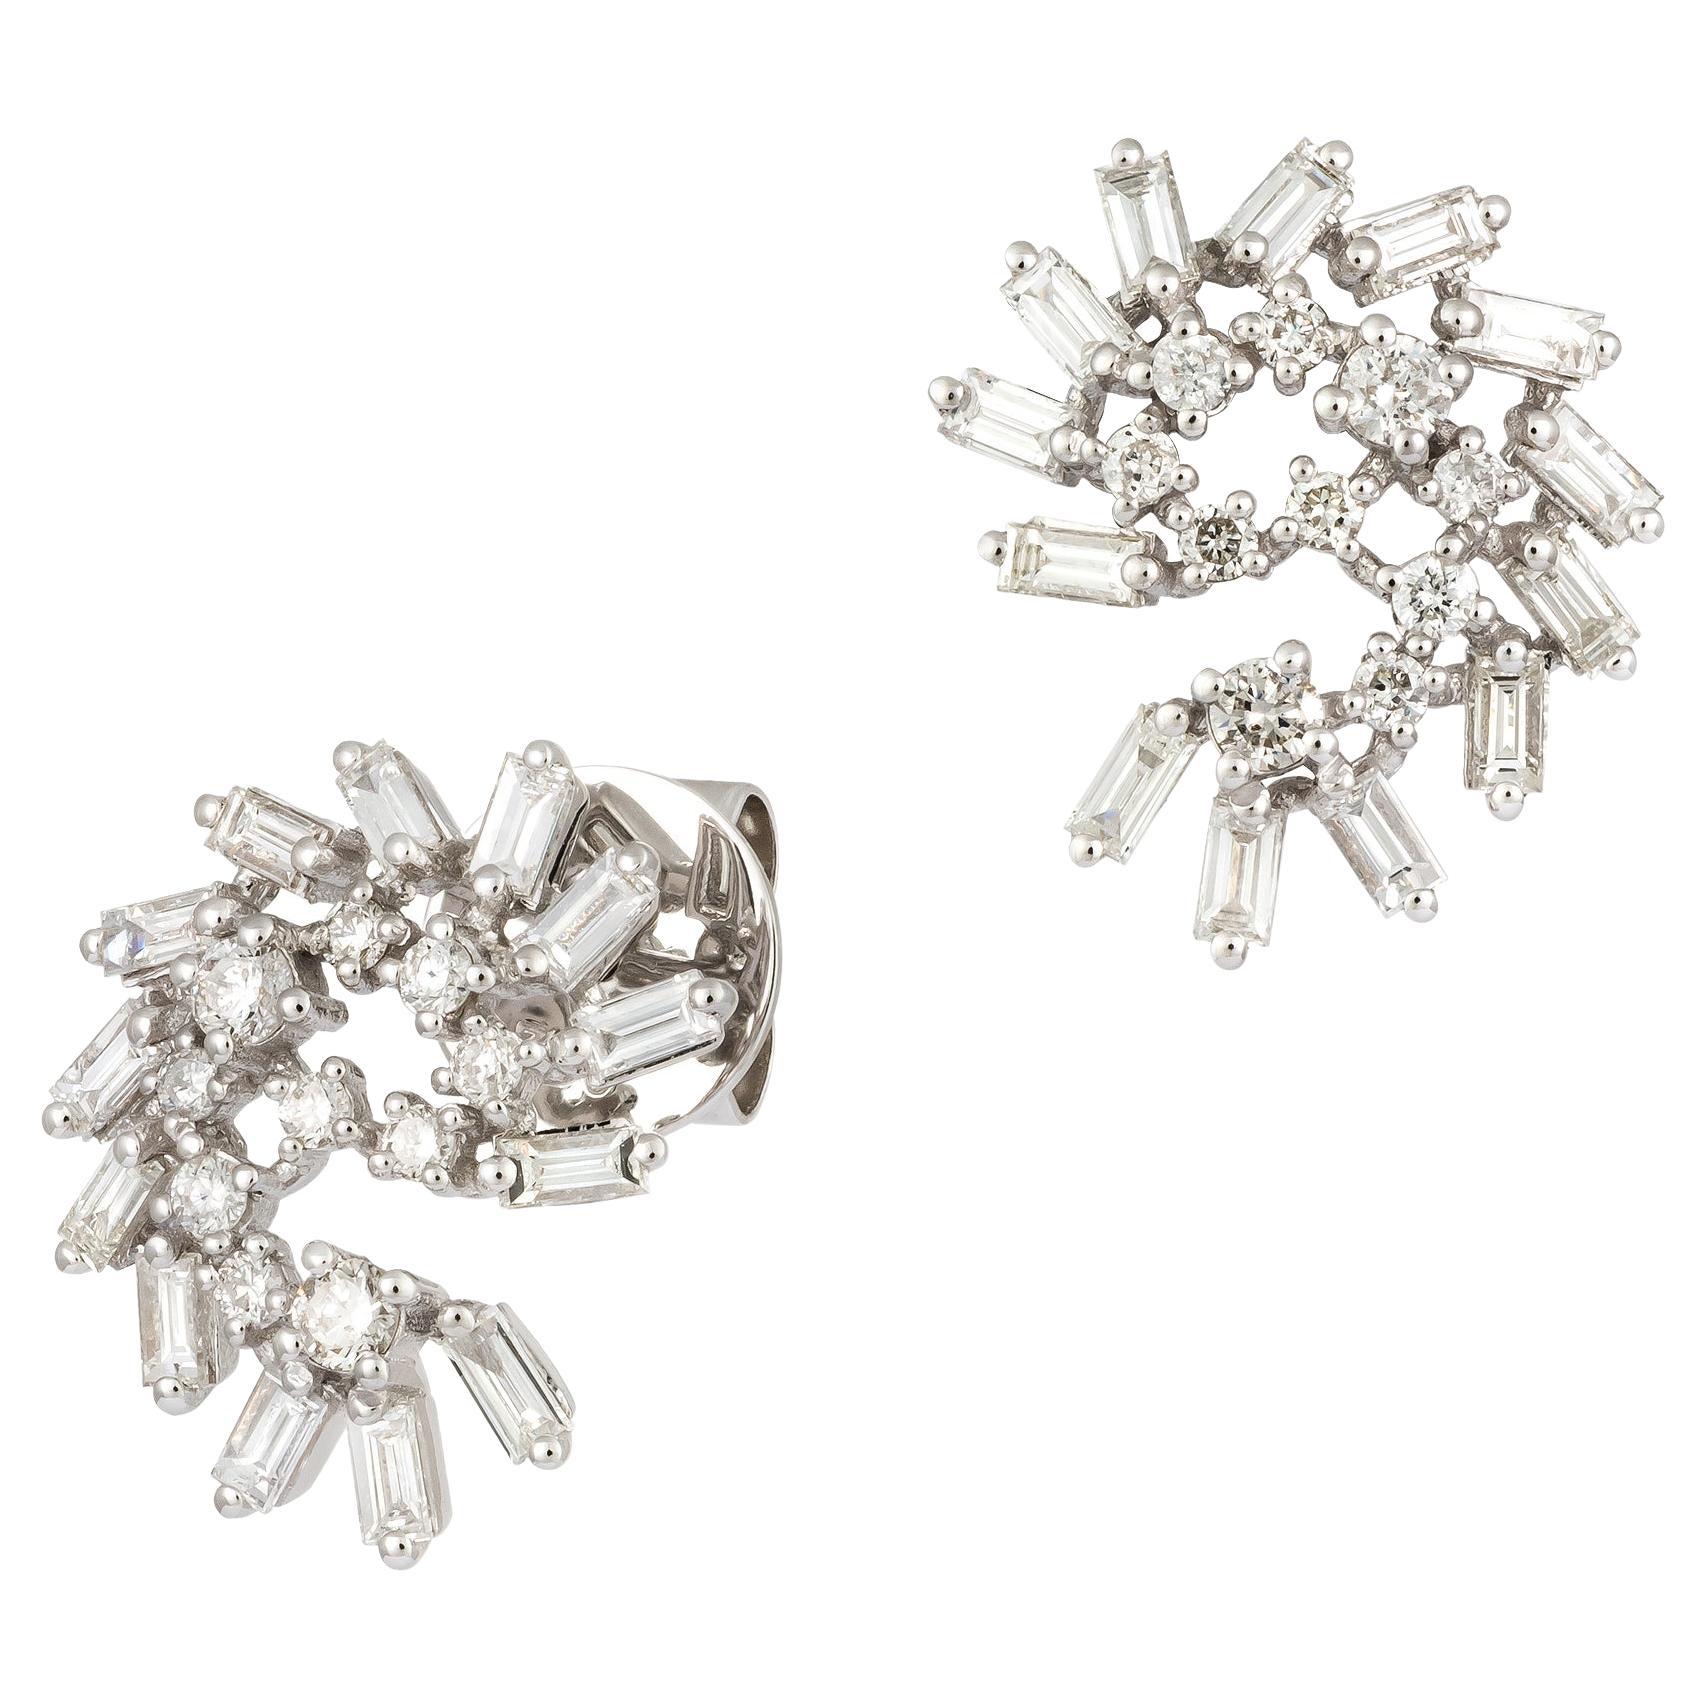 Stunning Wings White Gold 18K Earrings Diamond For Her For Sale